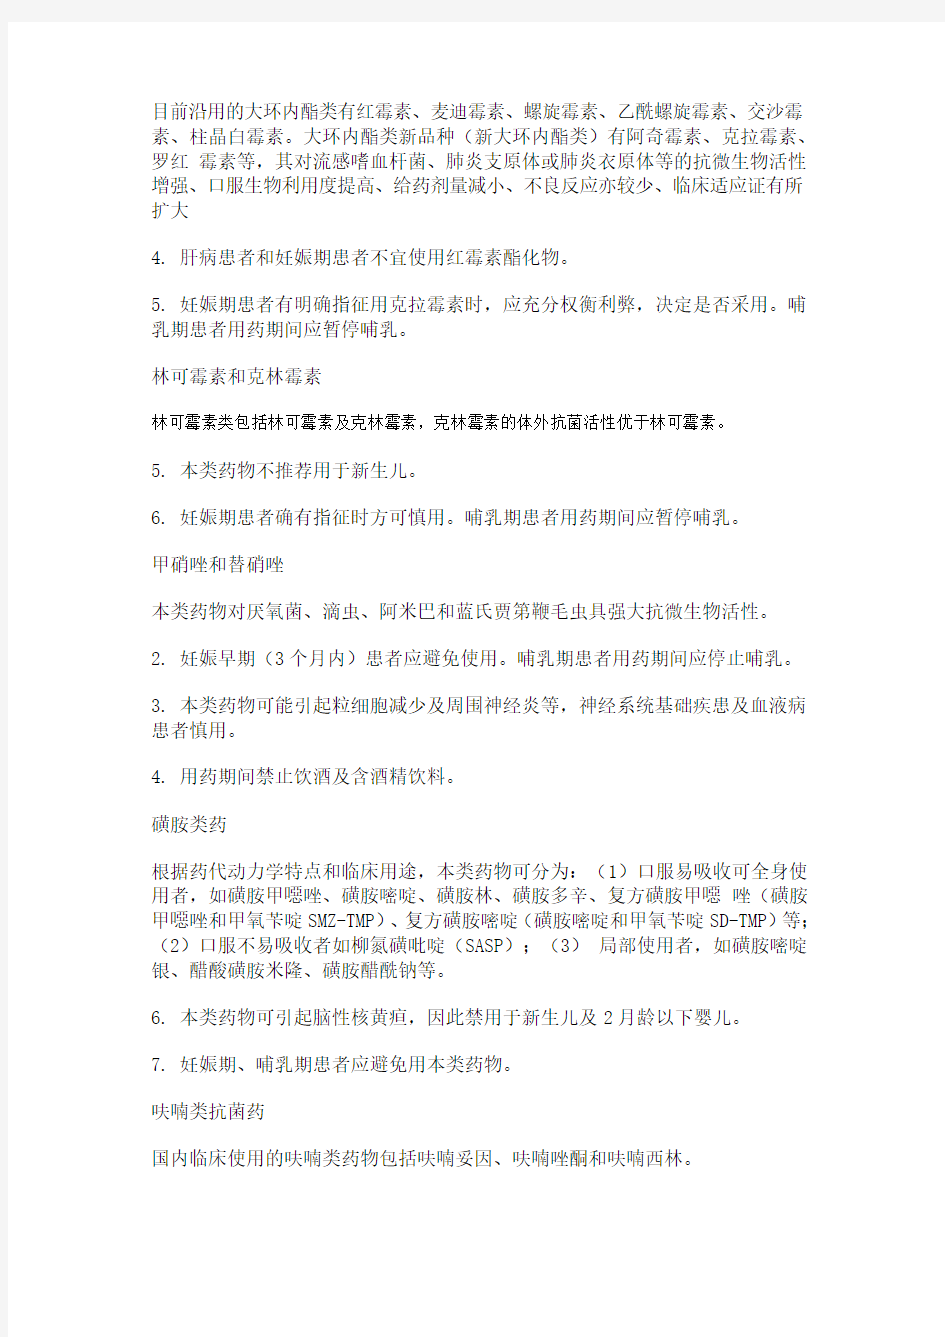 #上海市《抗菌药物临床应用指导原则》实施细则(试行)